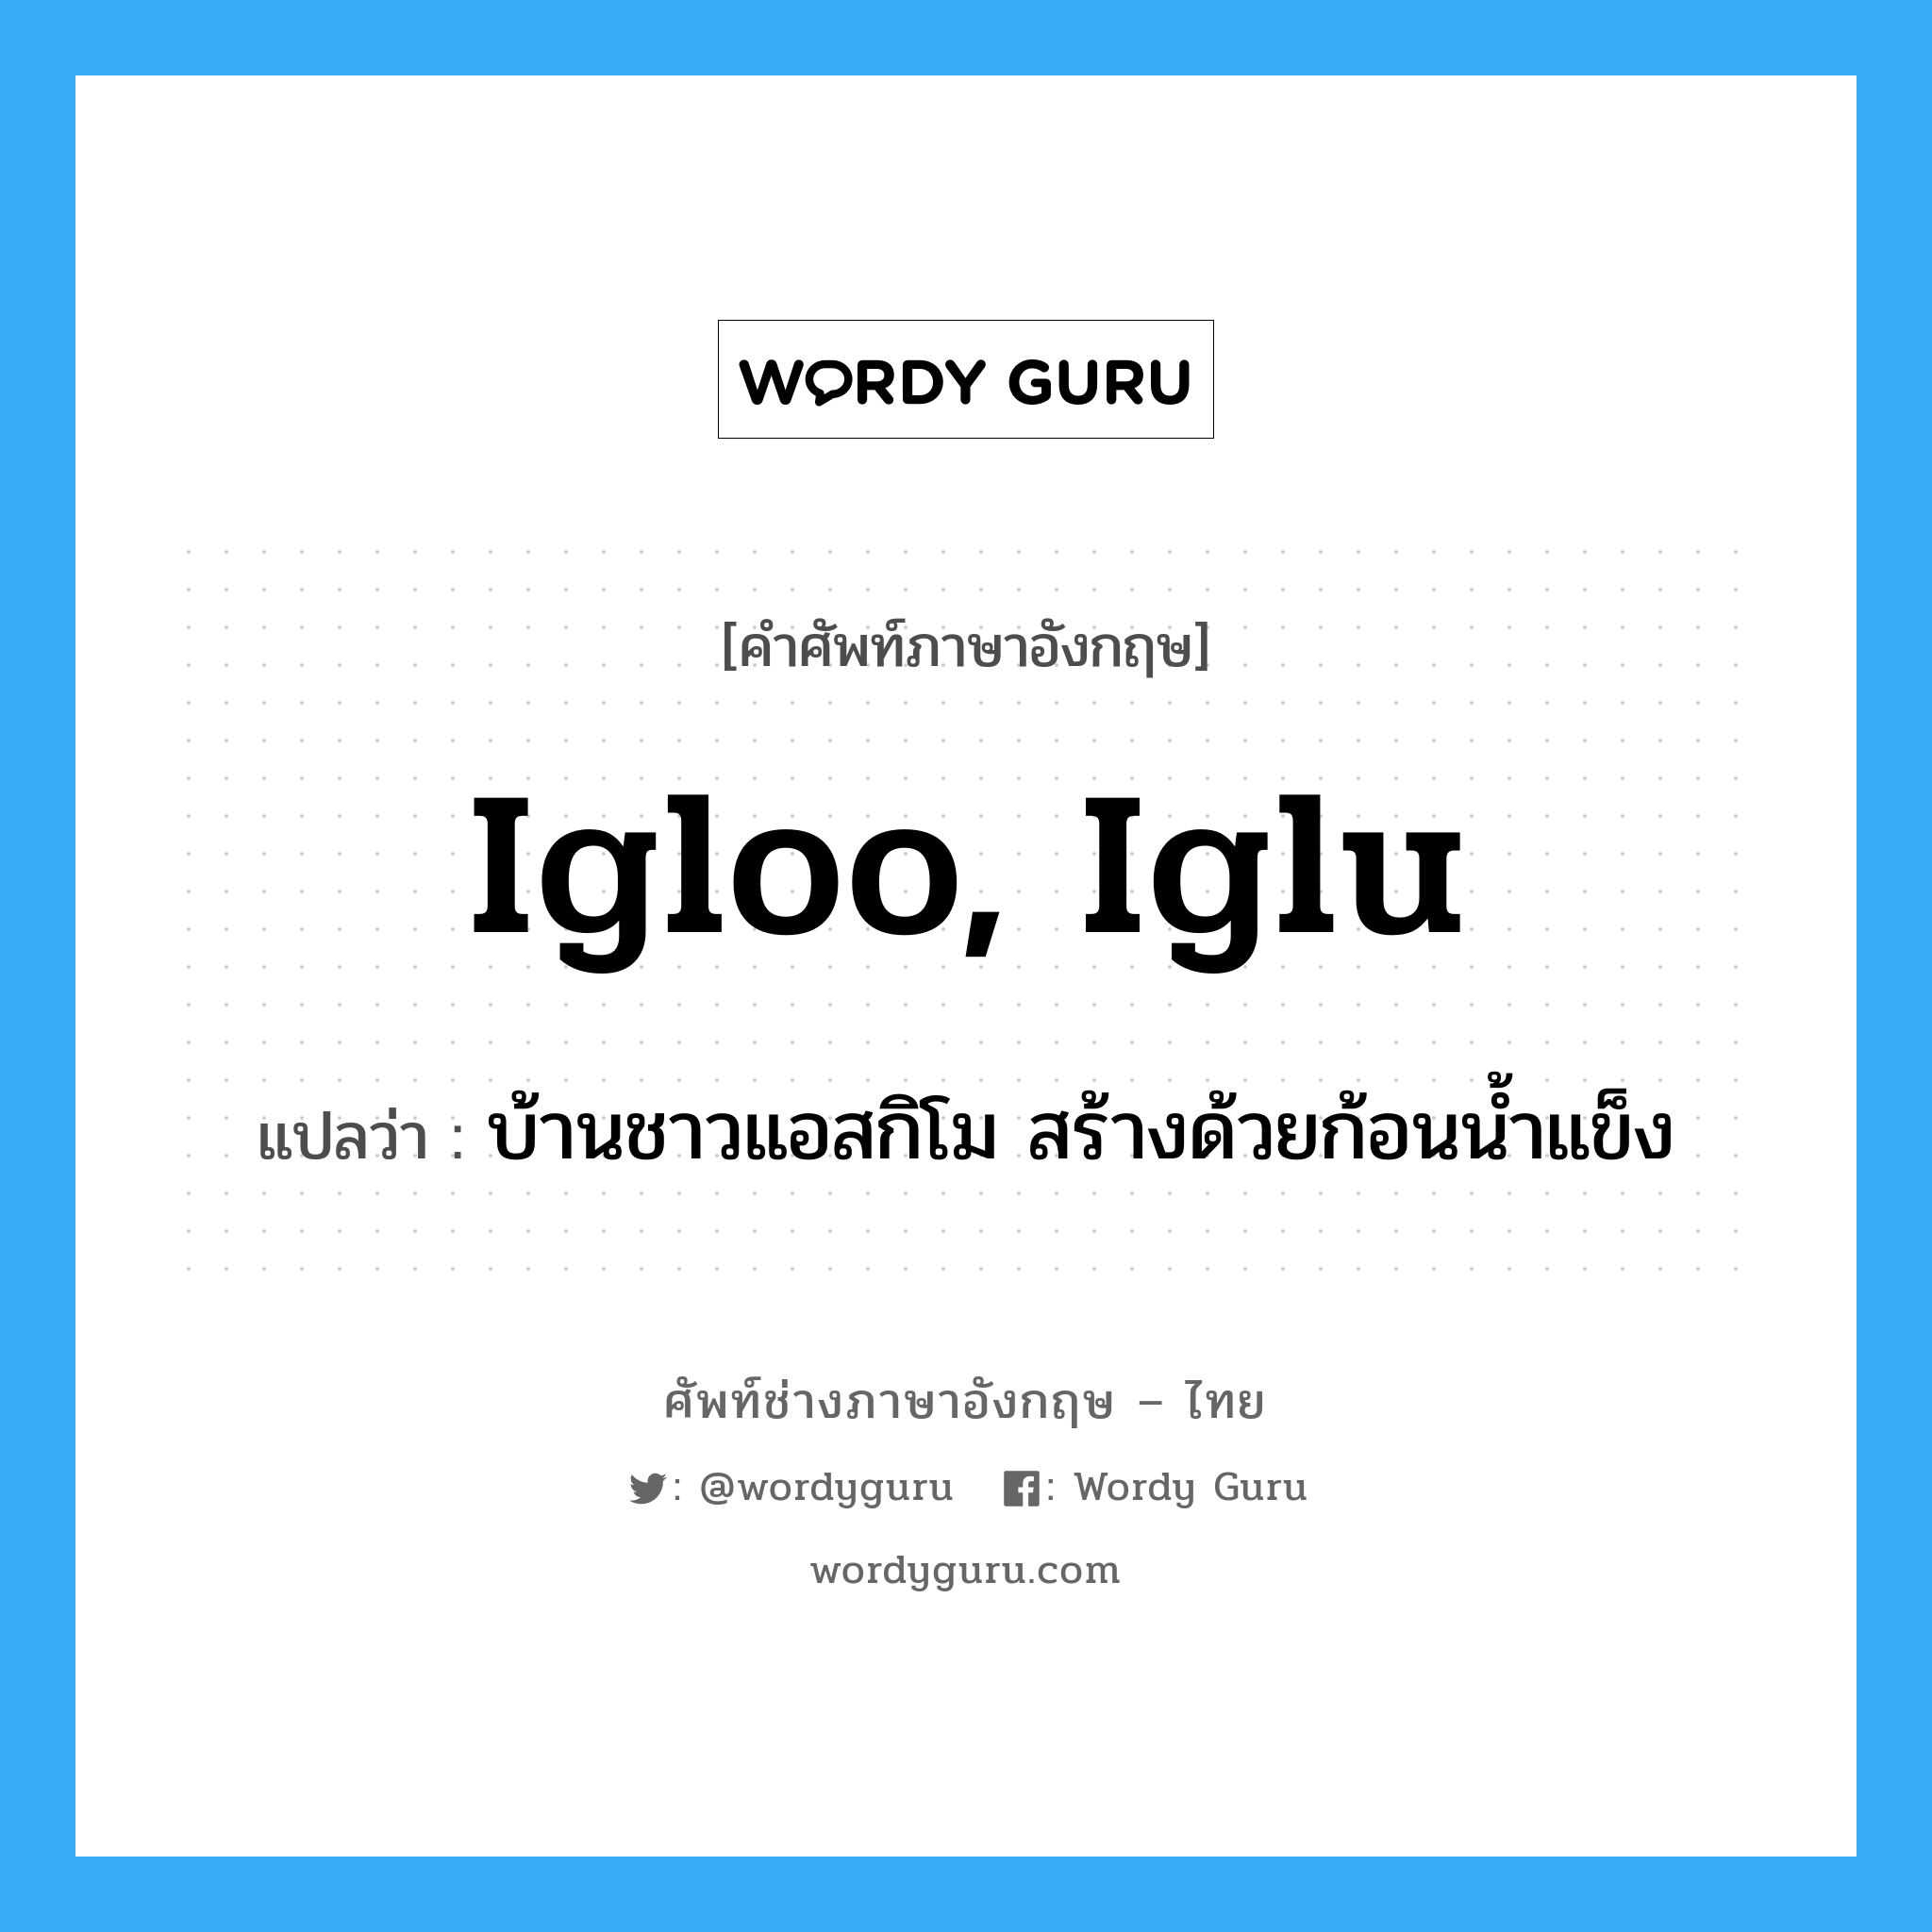 igloo, iglu แปลว่า?, คำศัพท์ช่างภาษาอังกฤษ - ไทย igloo, iglu คำศัพท์ภาษาอังกฤษ igloo, iglu แปลว่า บ้านชาวแอสกิโม สร้างด้วยก้อนน้ำแข็ง